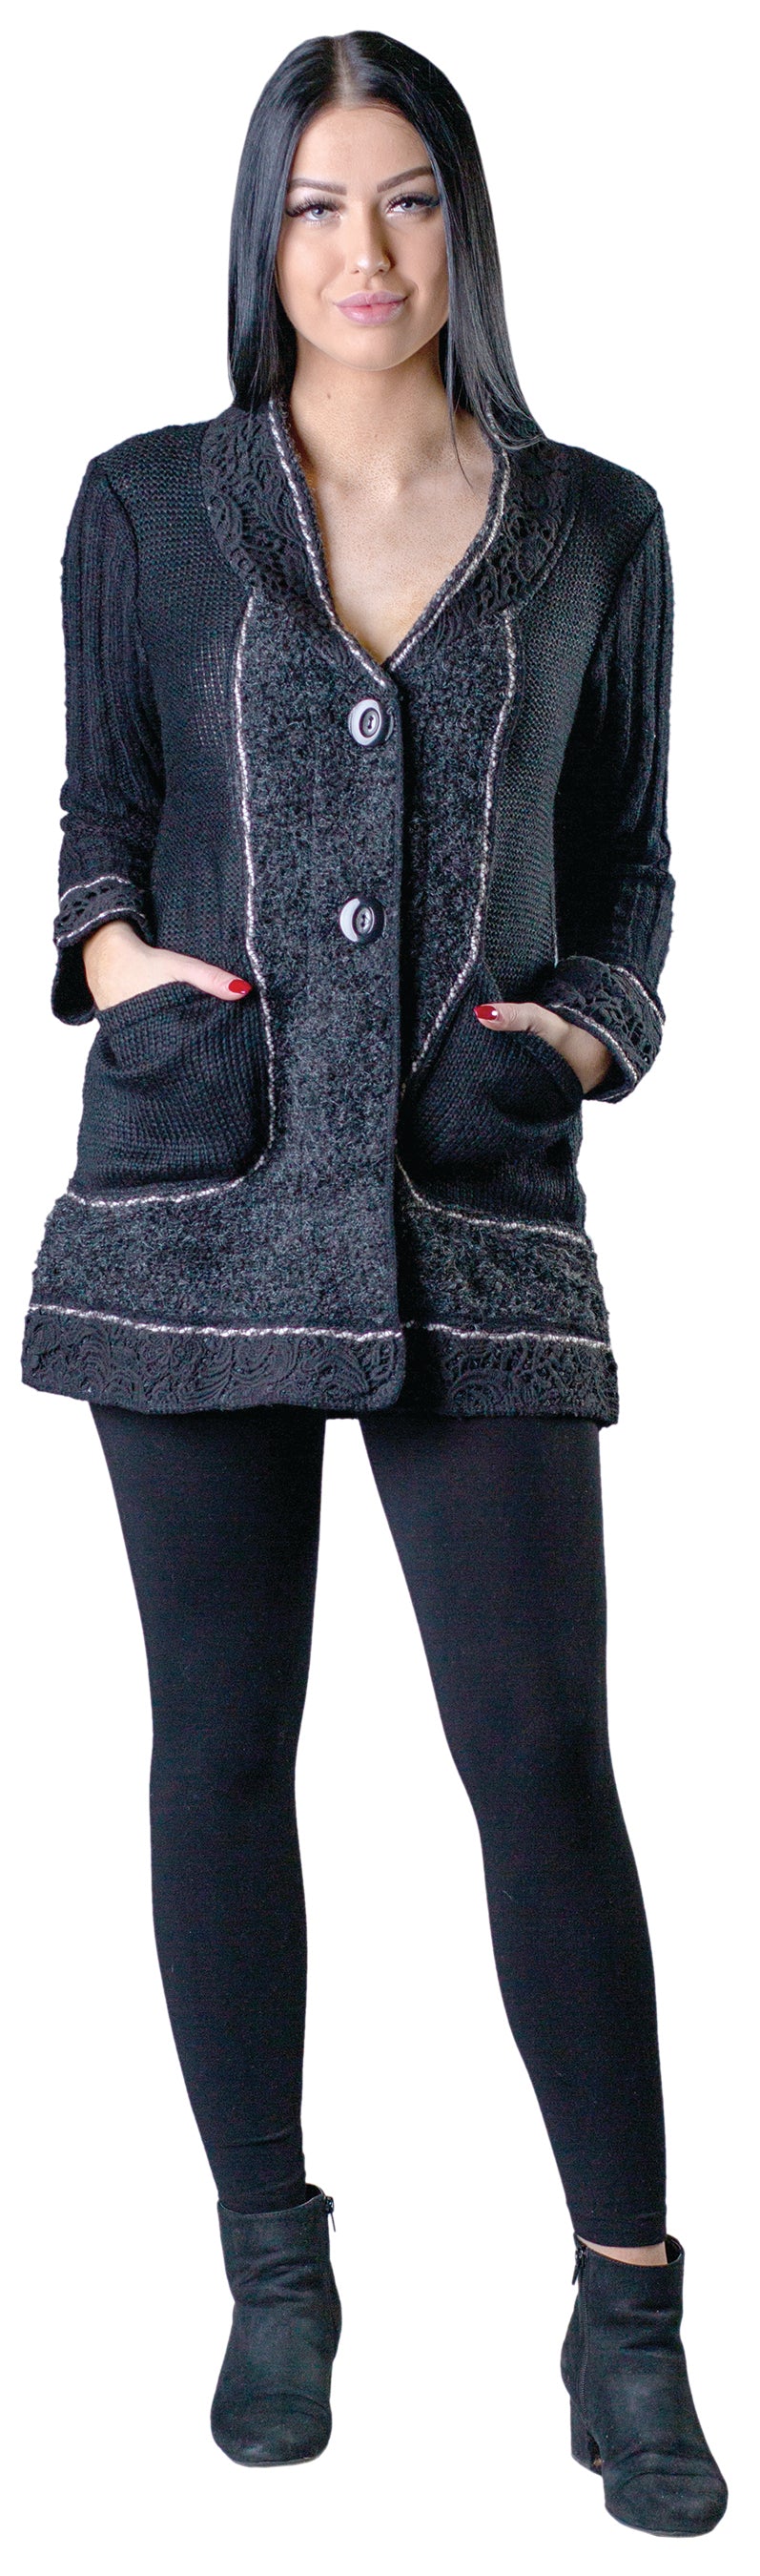 Aspen Sweater Coat